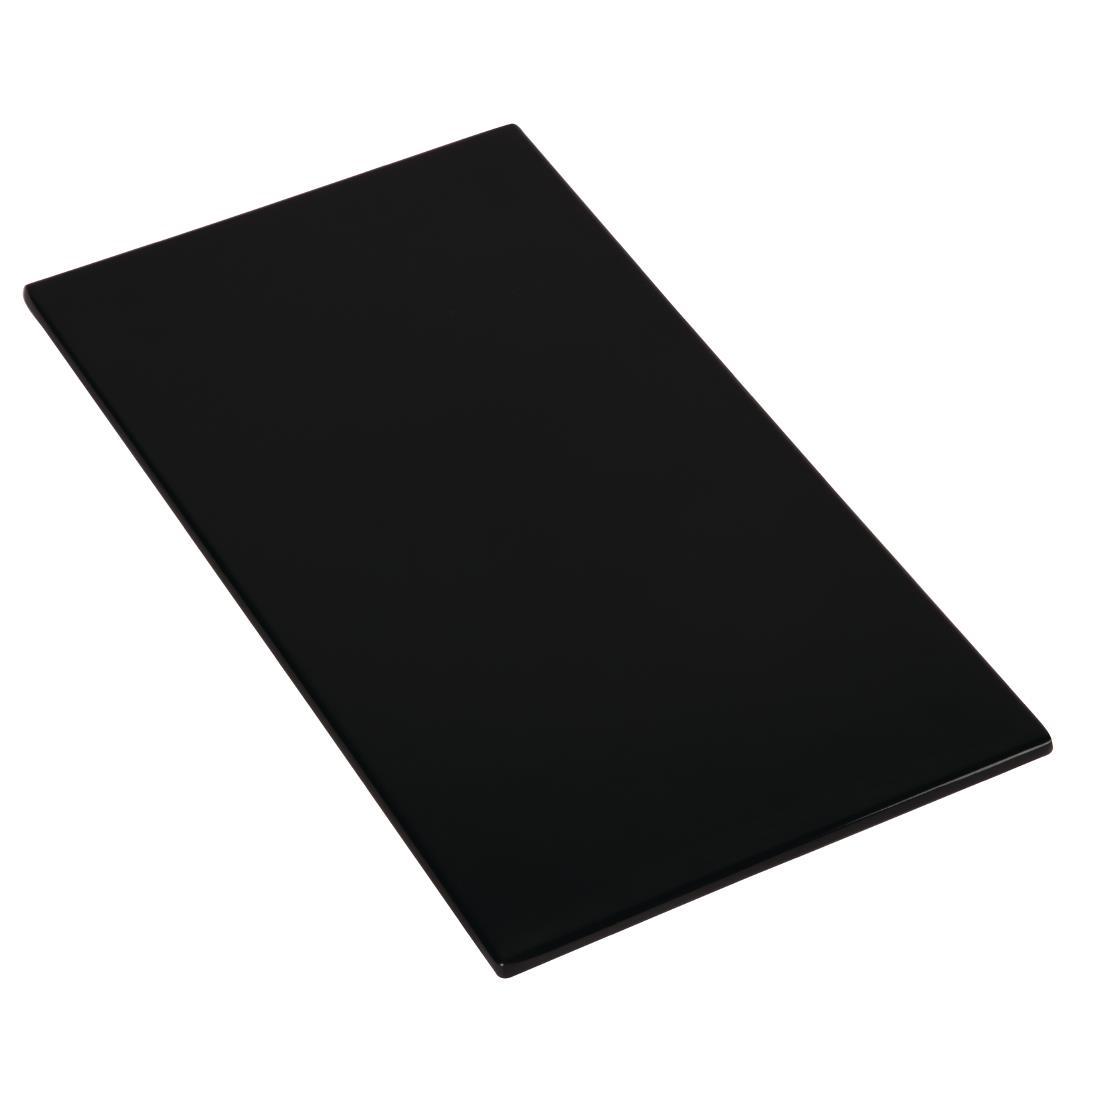 APS Zero Melamine Platter Black GN 1/3 - Each - GK856 - 1